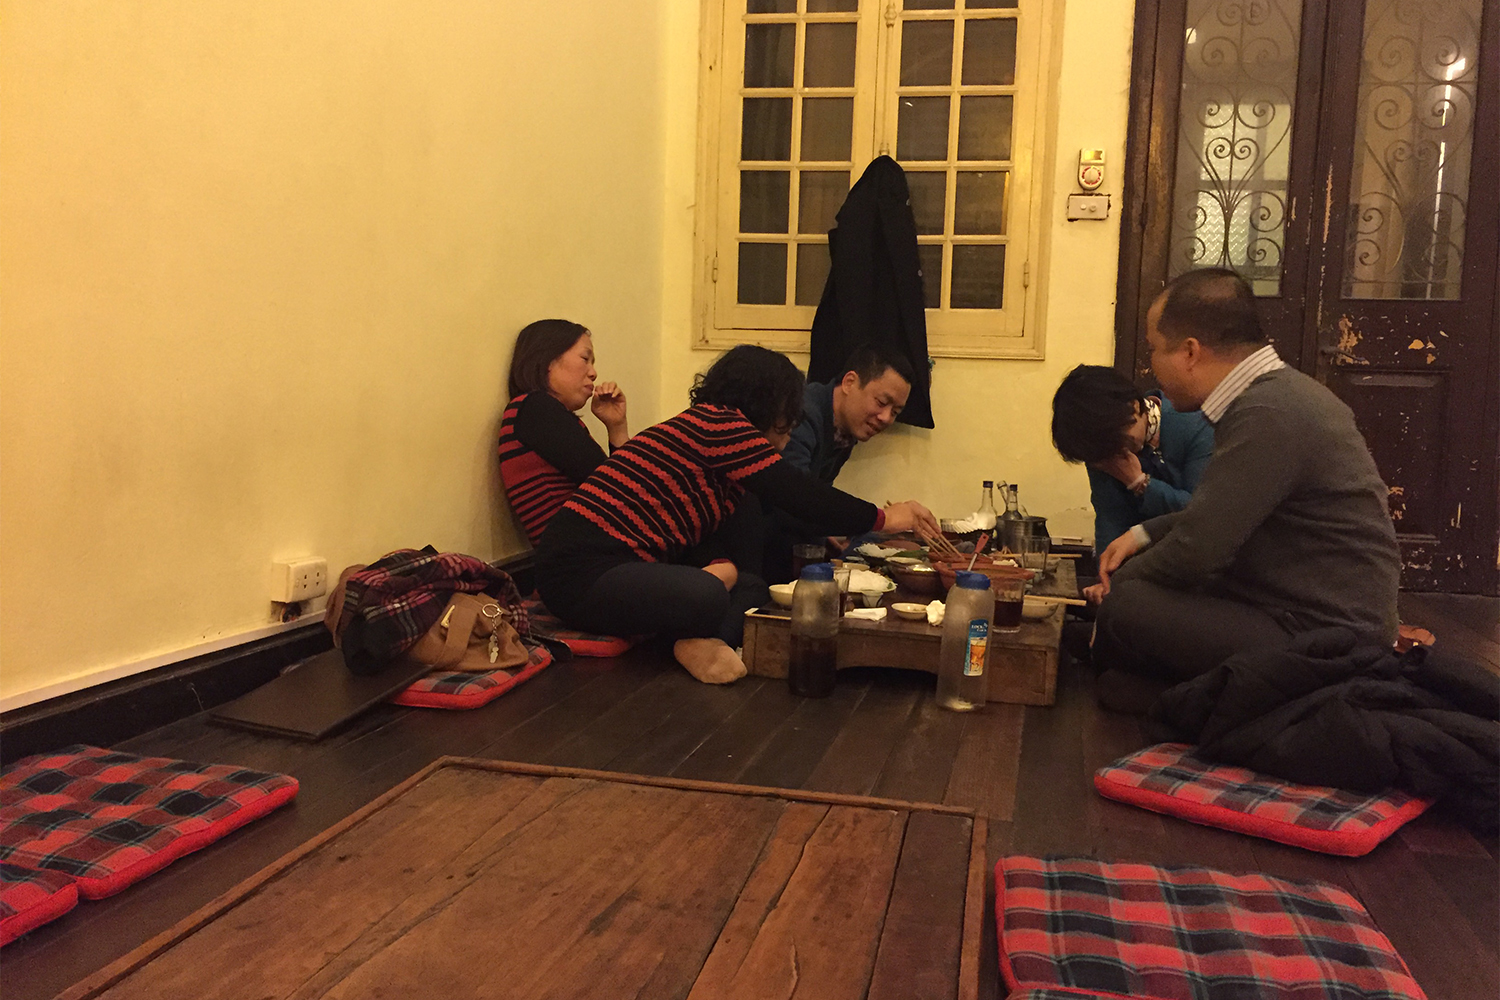 Nous avons dîné au Chim Sao. Les clients s’assoient par terre, sur des coussins, pieds nus ou en chaussette !